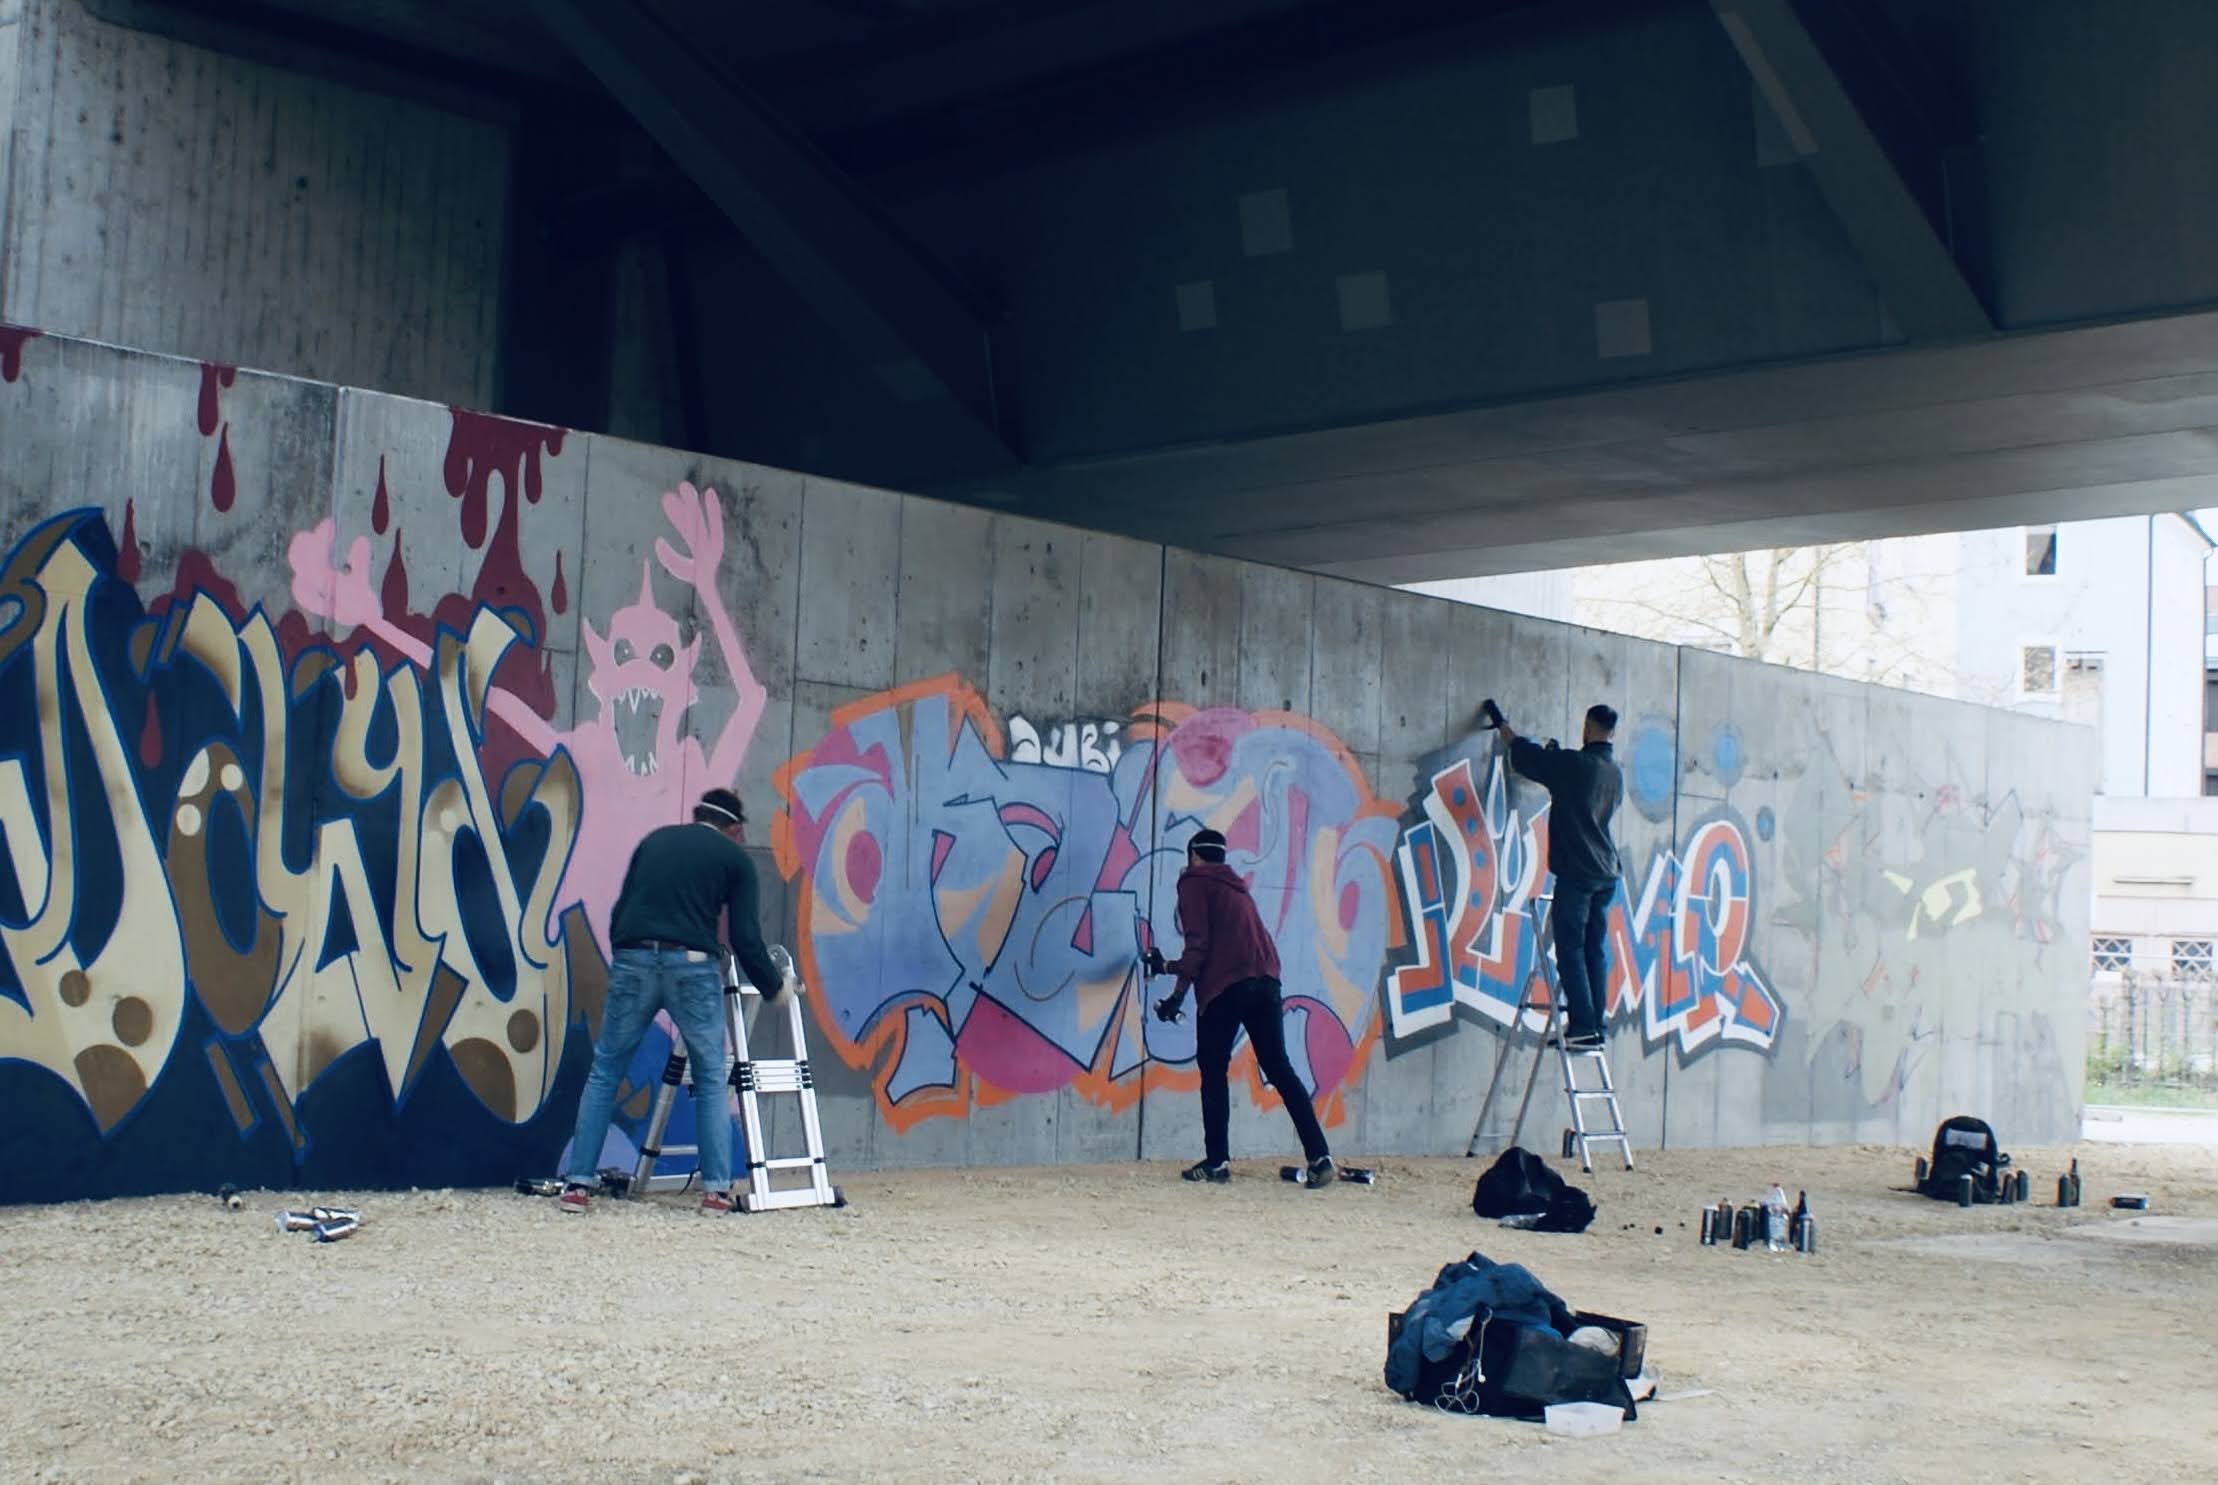 Graffiti an der HWS Wand. Drei Graffiti Künstler besprühen die graue Betonwand mit bunten Schriftzügen. Die Grundform eines rosa Monsters ist in der linken Bildhälfte zu erkennen.